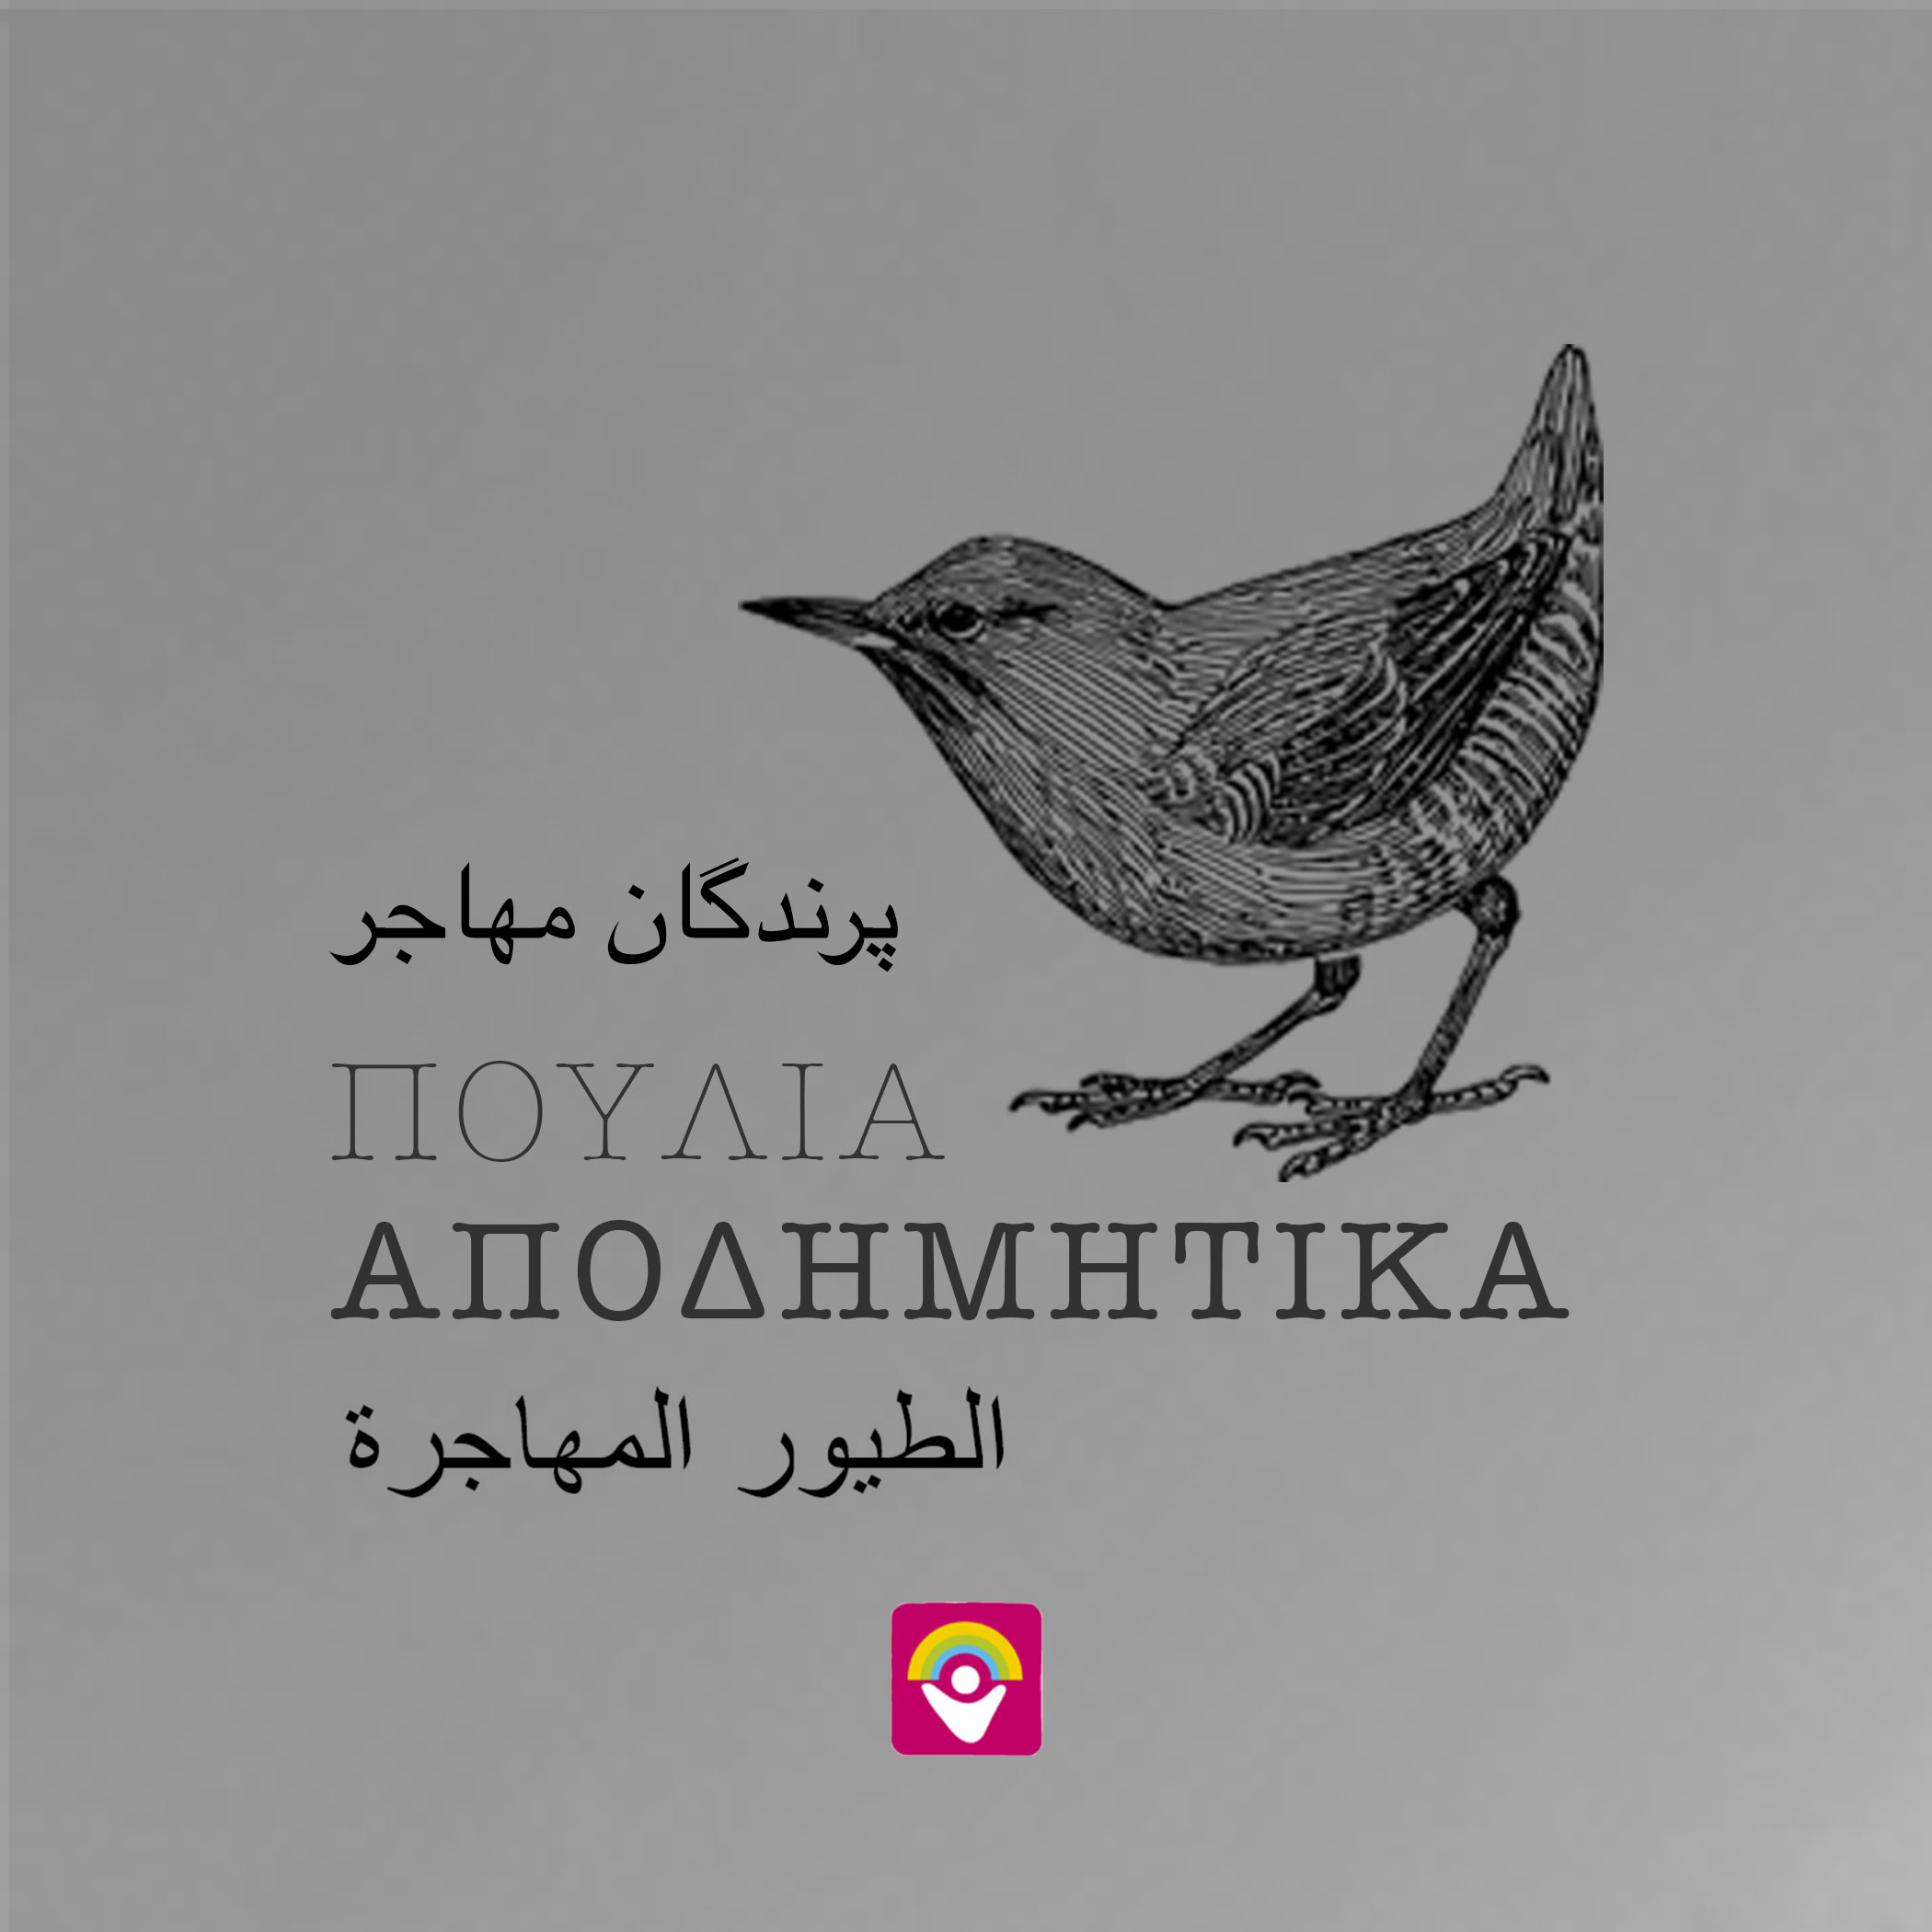 Το 4ο φύλλο της εφημερίδας «Αποδημητικά Πουλιά» στην αγγλική γλώσσα